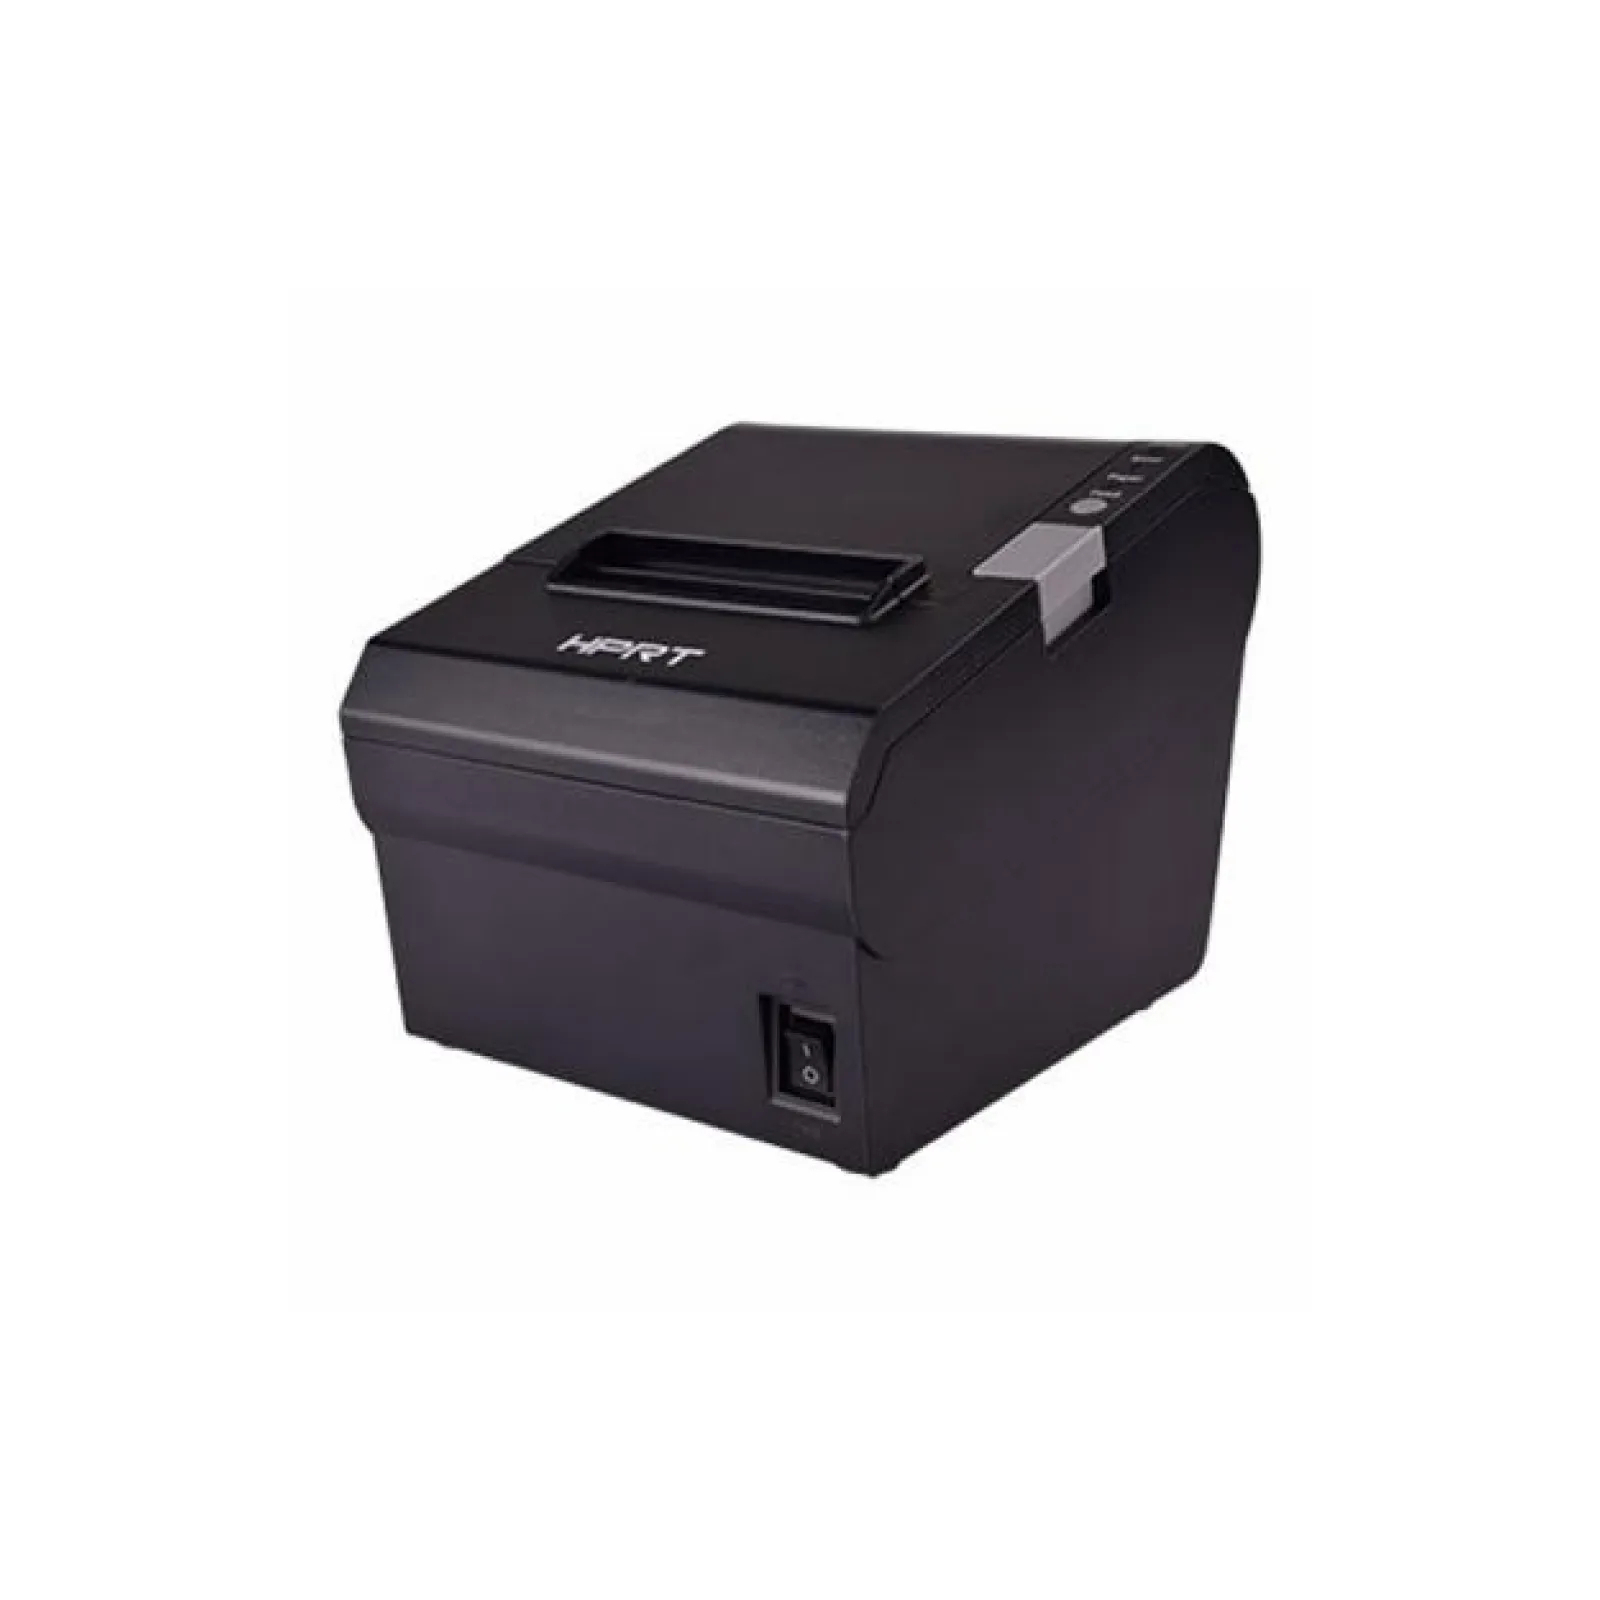 Принтер чеков HPRT TP805 (USB+WIFI) Black (10899)